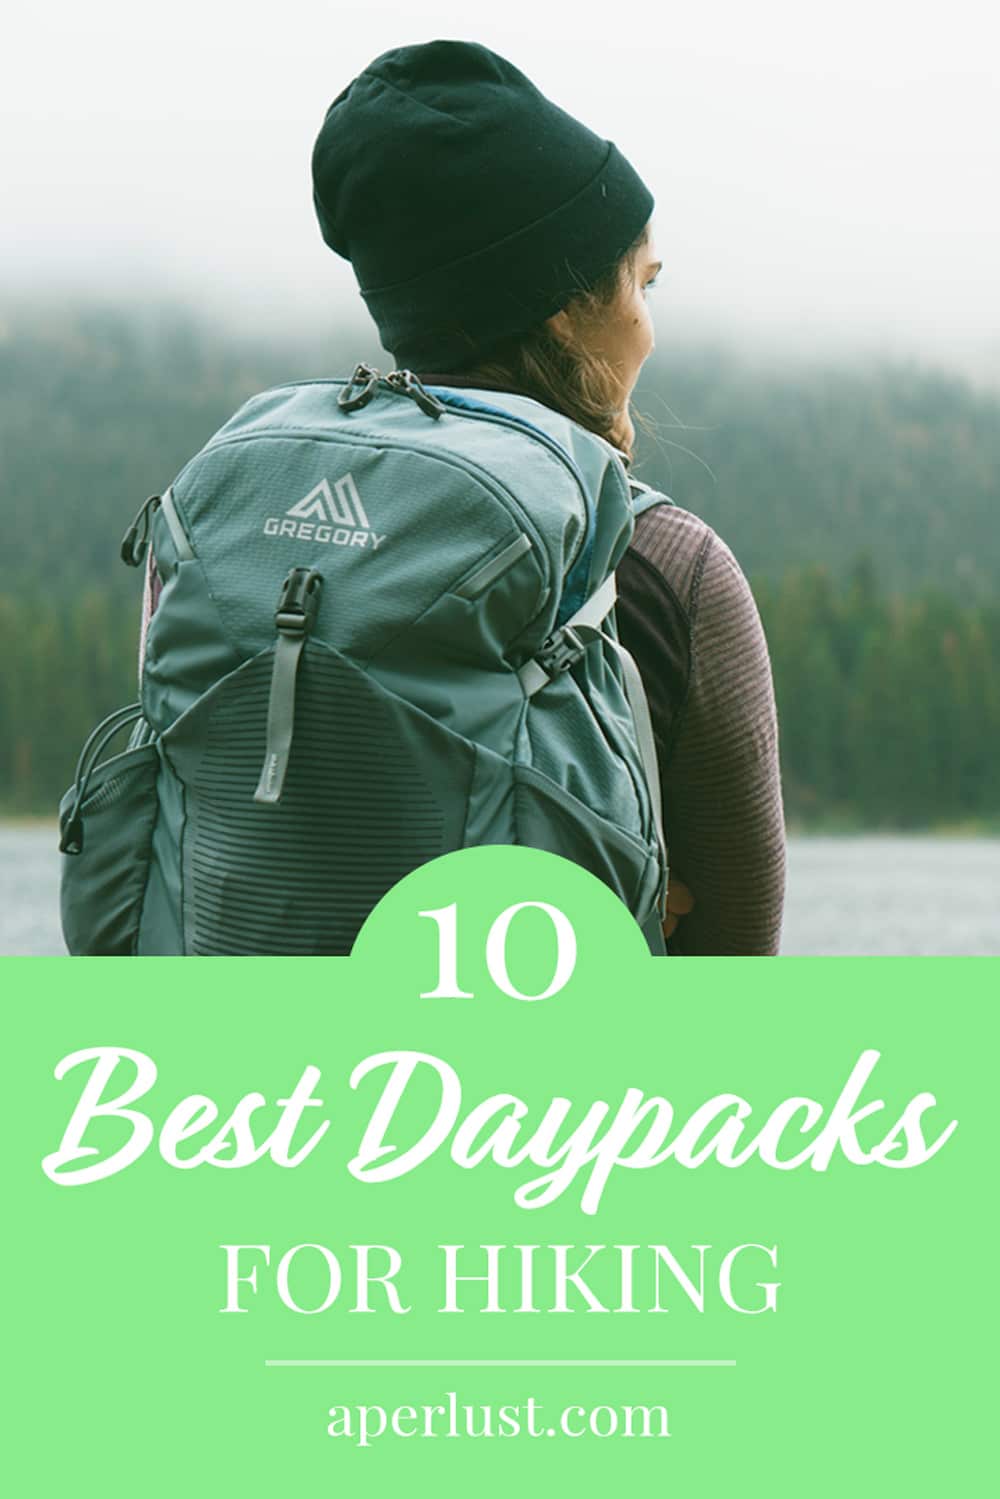 10 best daypacks for hiking Pinterest pin